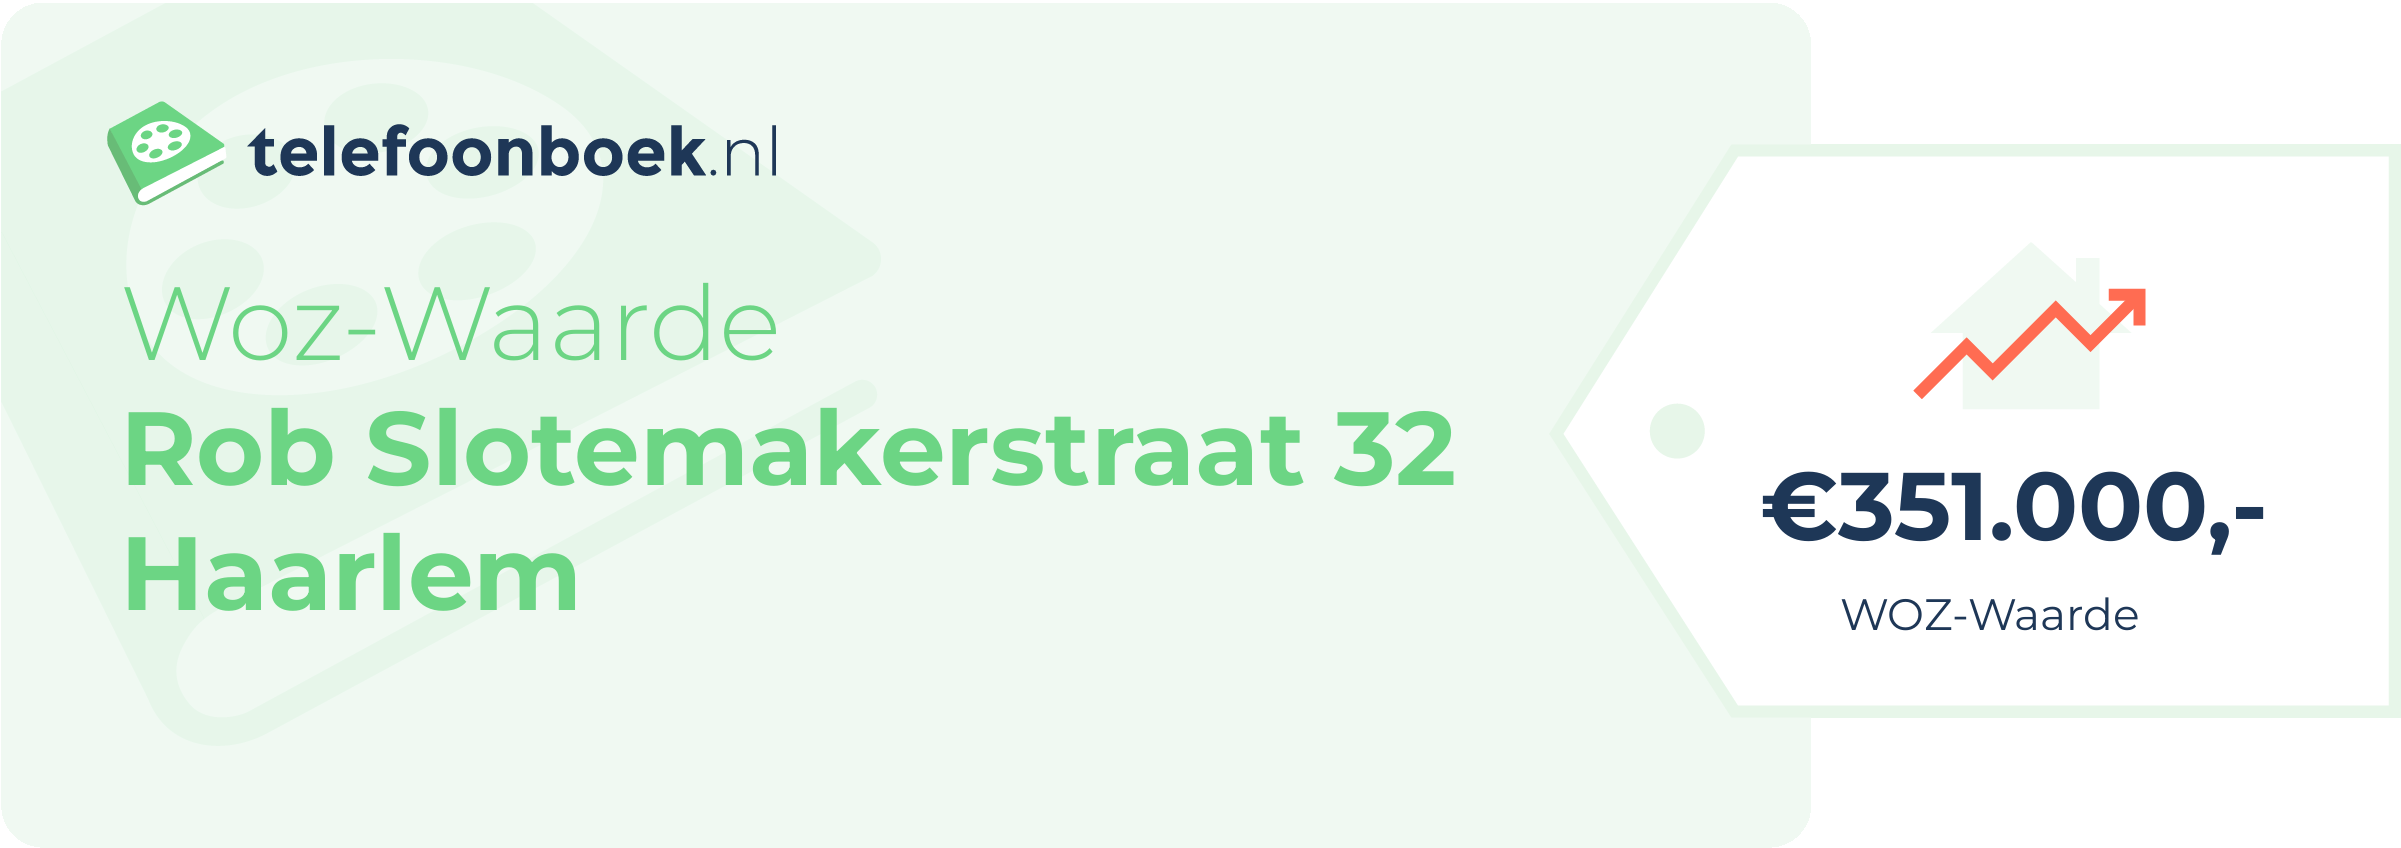 WOZ-waarde Rob Slotemakerstraat 32 Haarlem